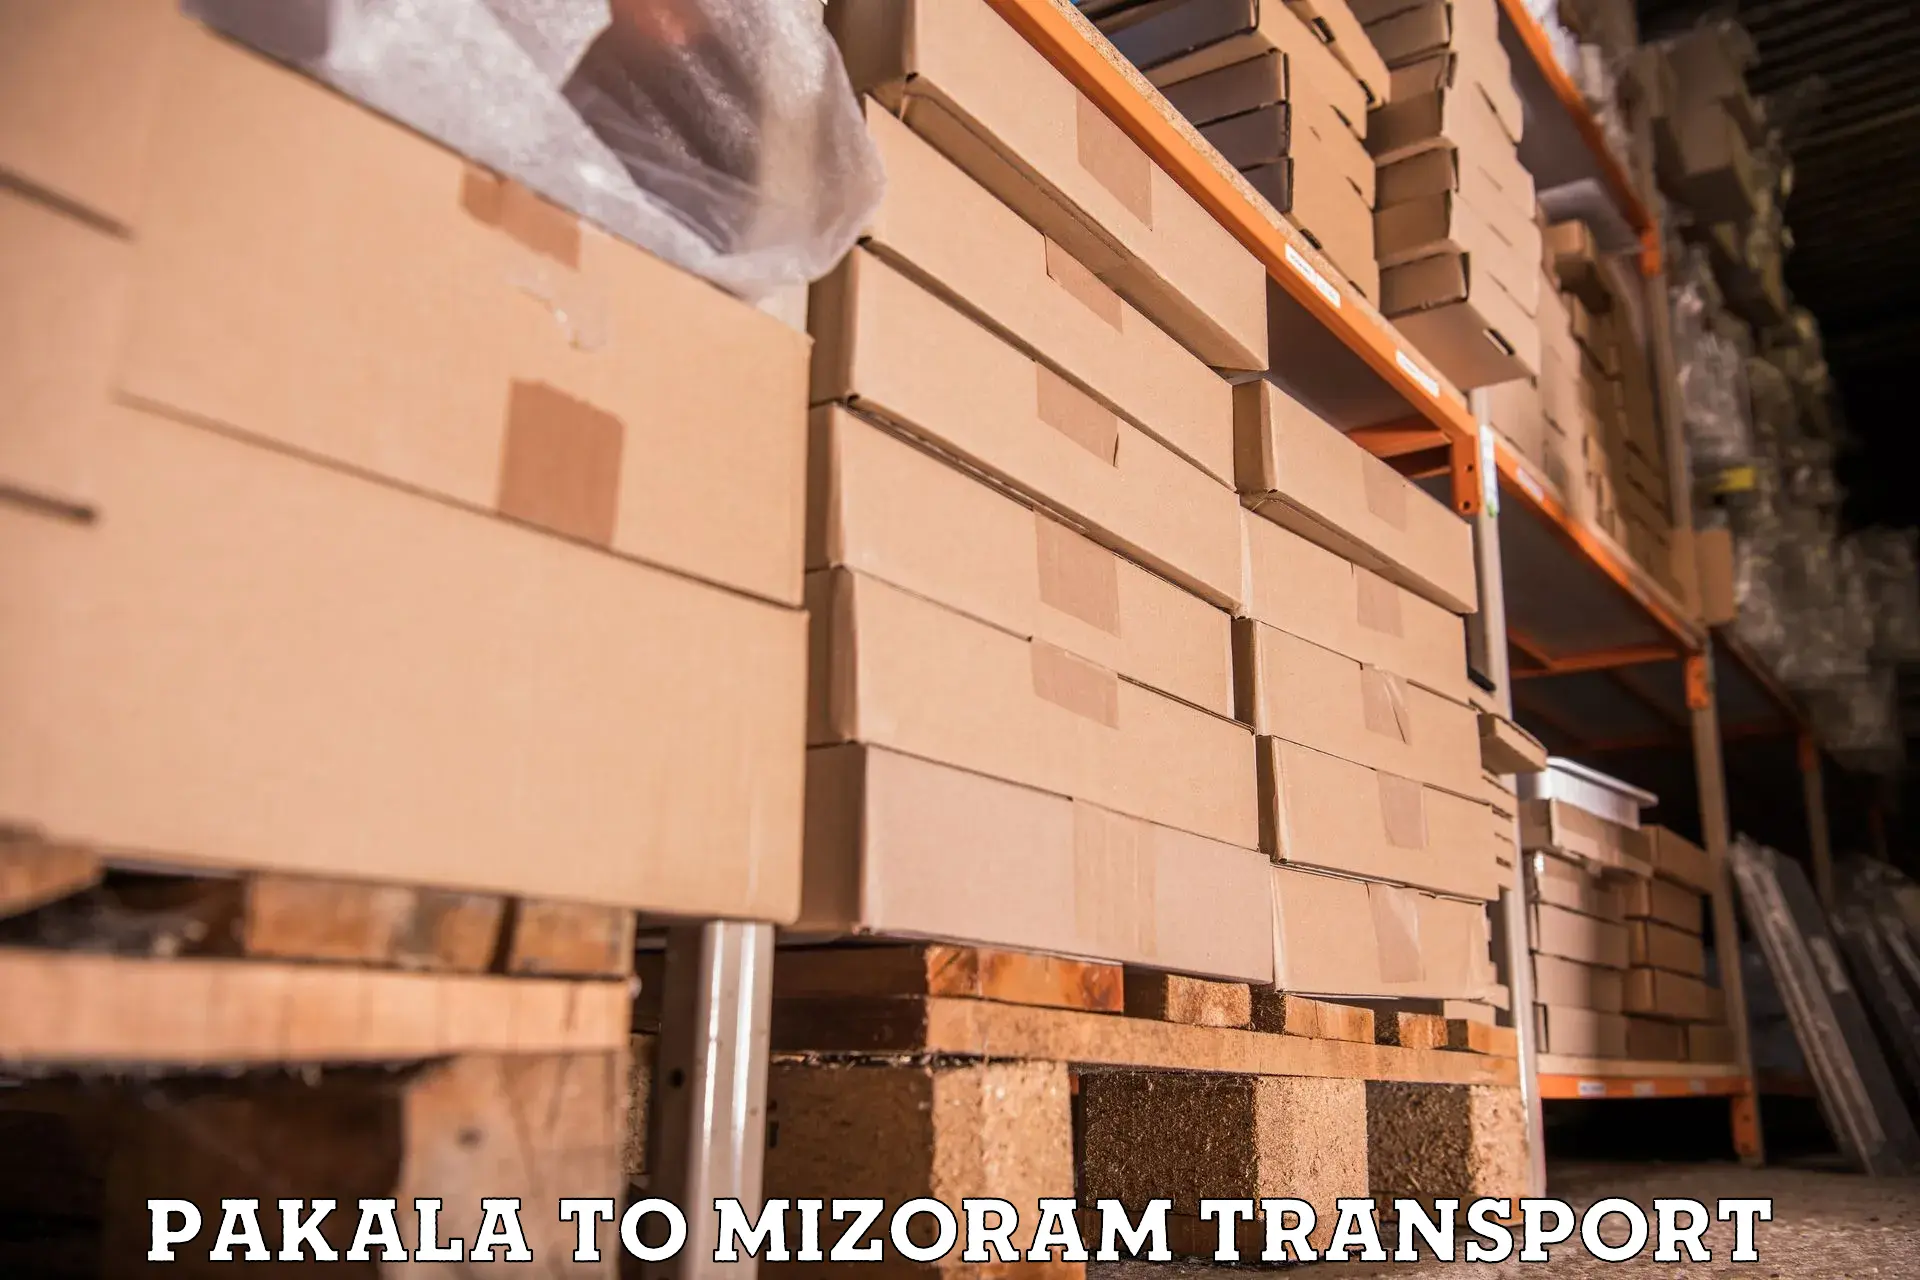 Nearby transport service Pakala to Mizoram